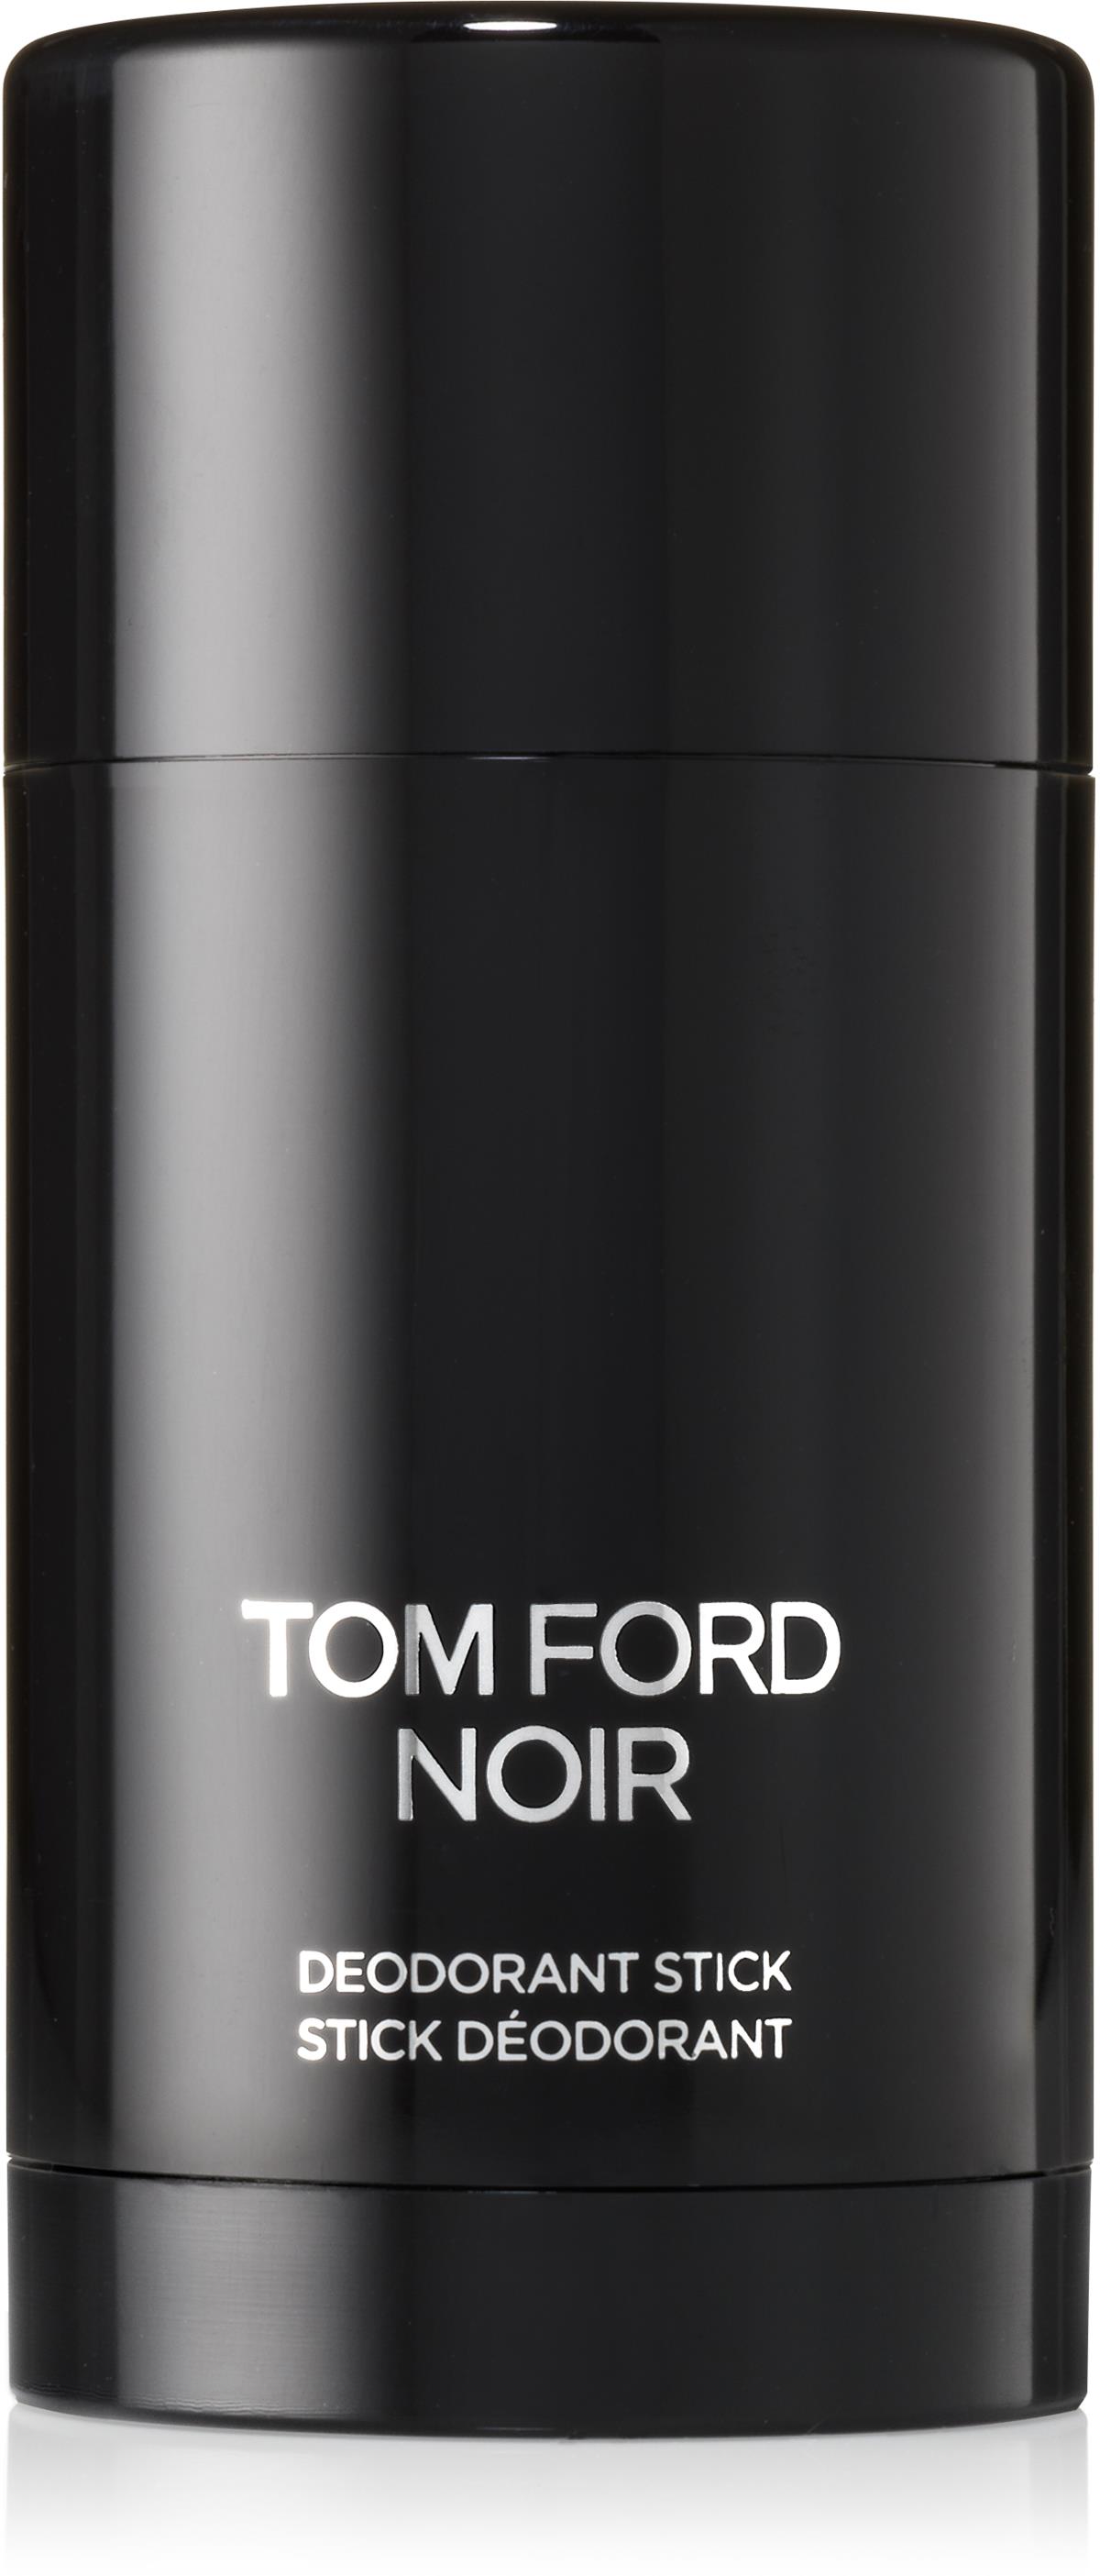 Tom Ford Men'S Signature Noir Stick 75 ml lyko.com